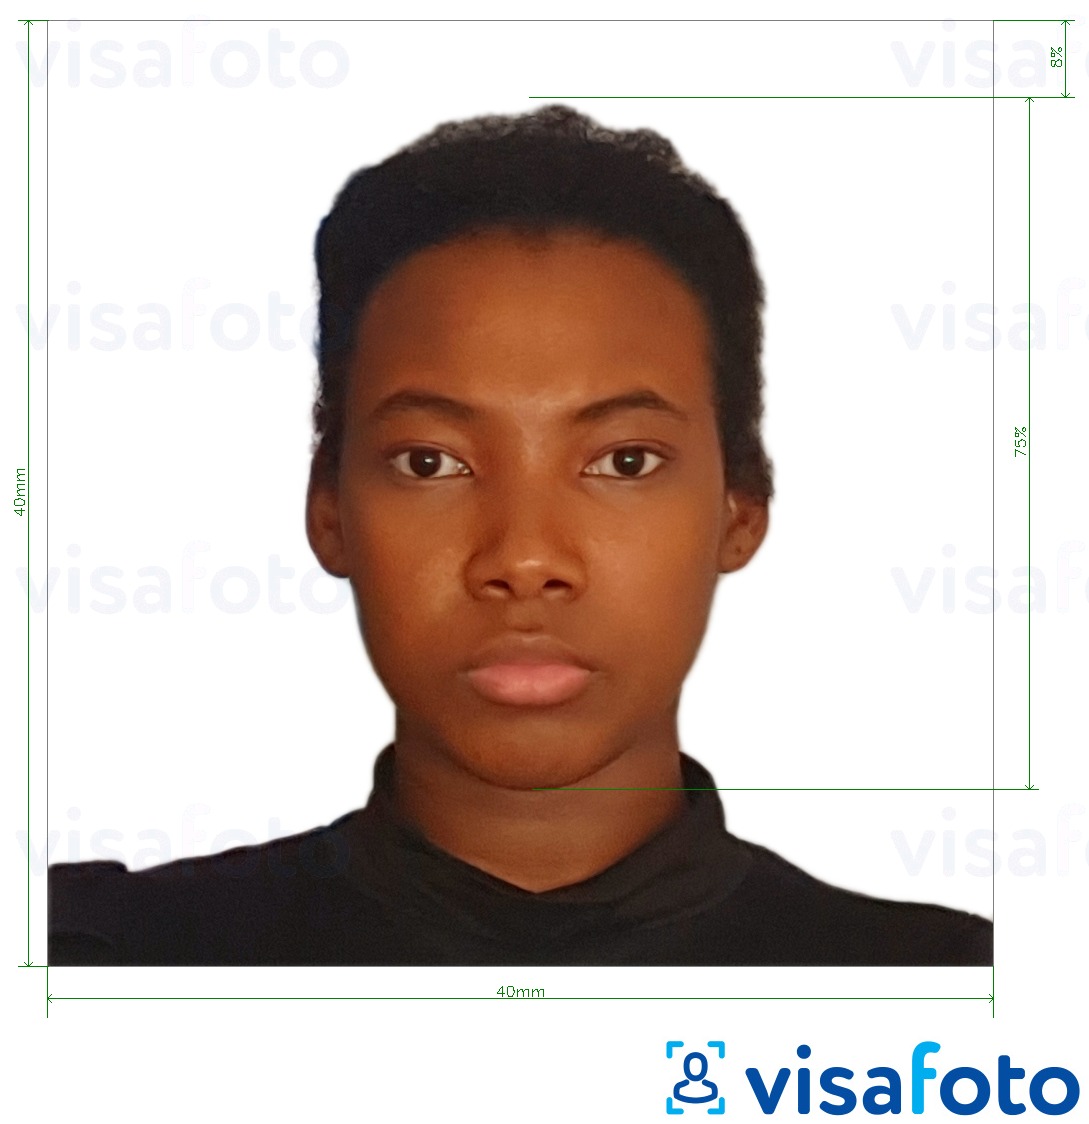 Voorbeeld van foto voor Kameroen paspoort 4x4 cm (40x40 mm) met exacte maatspecificatie